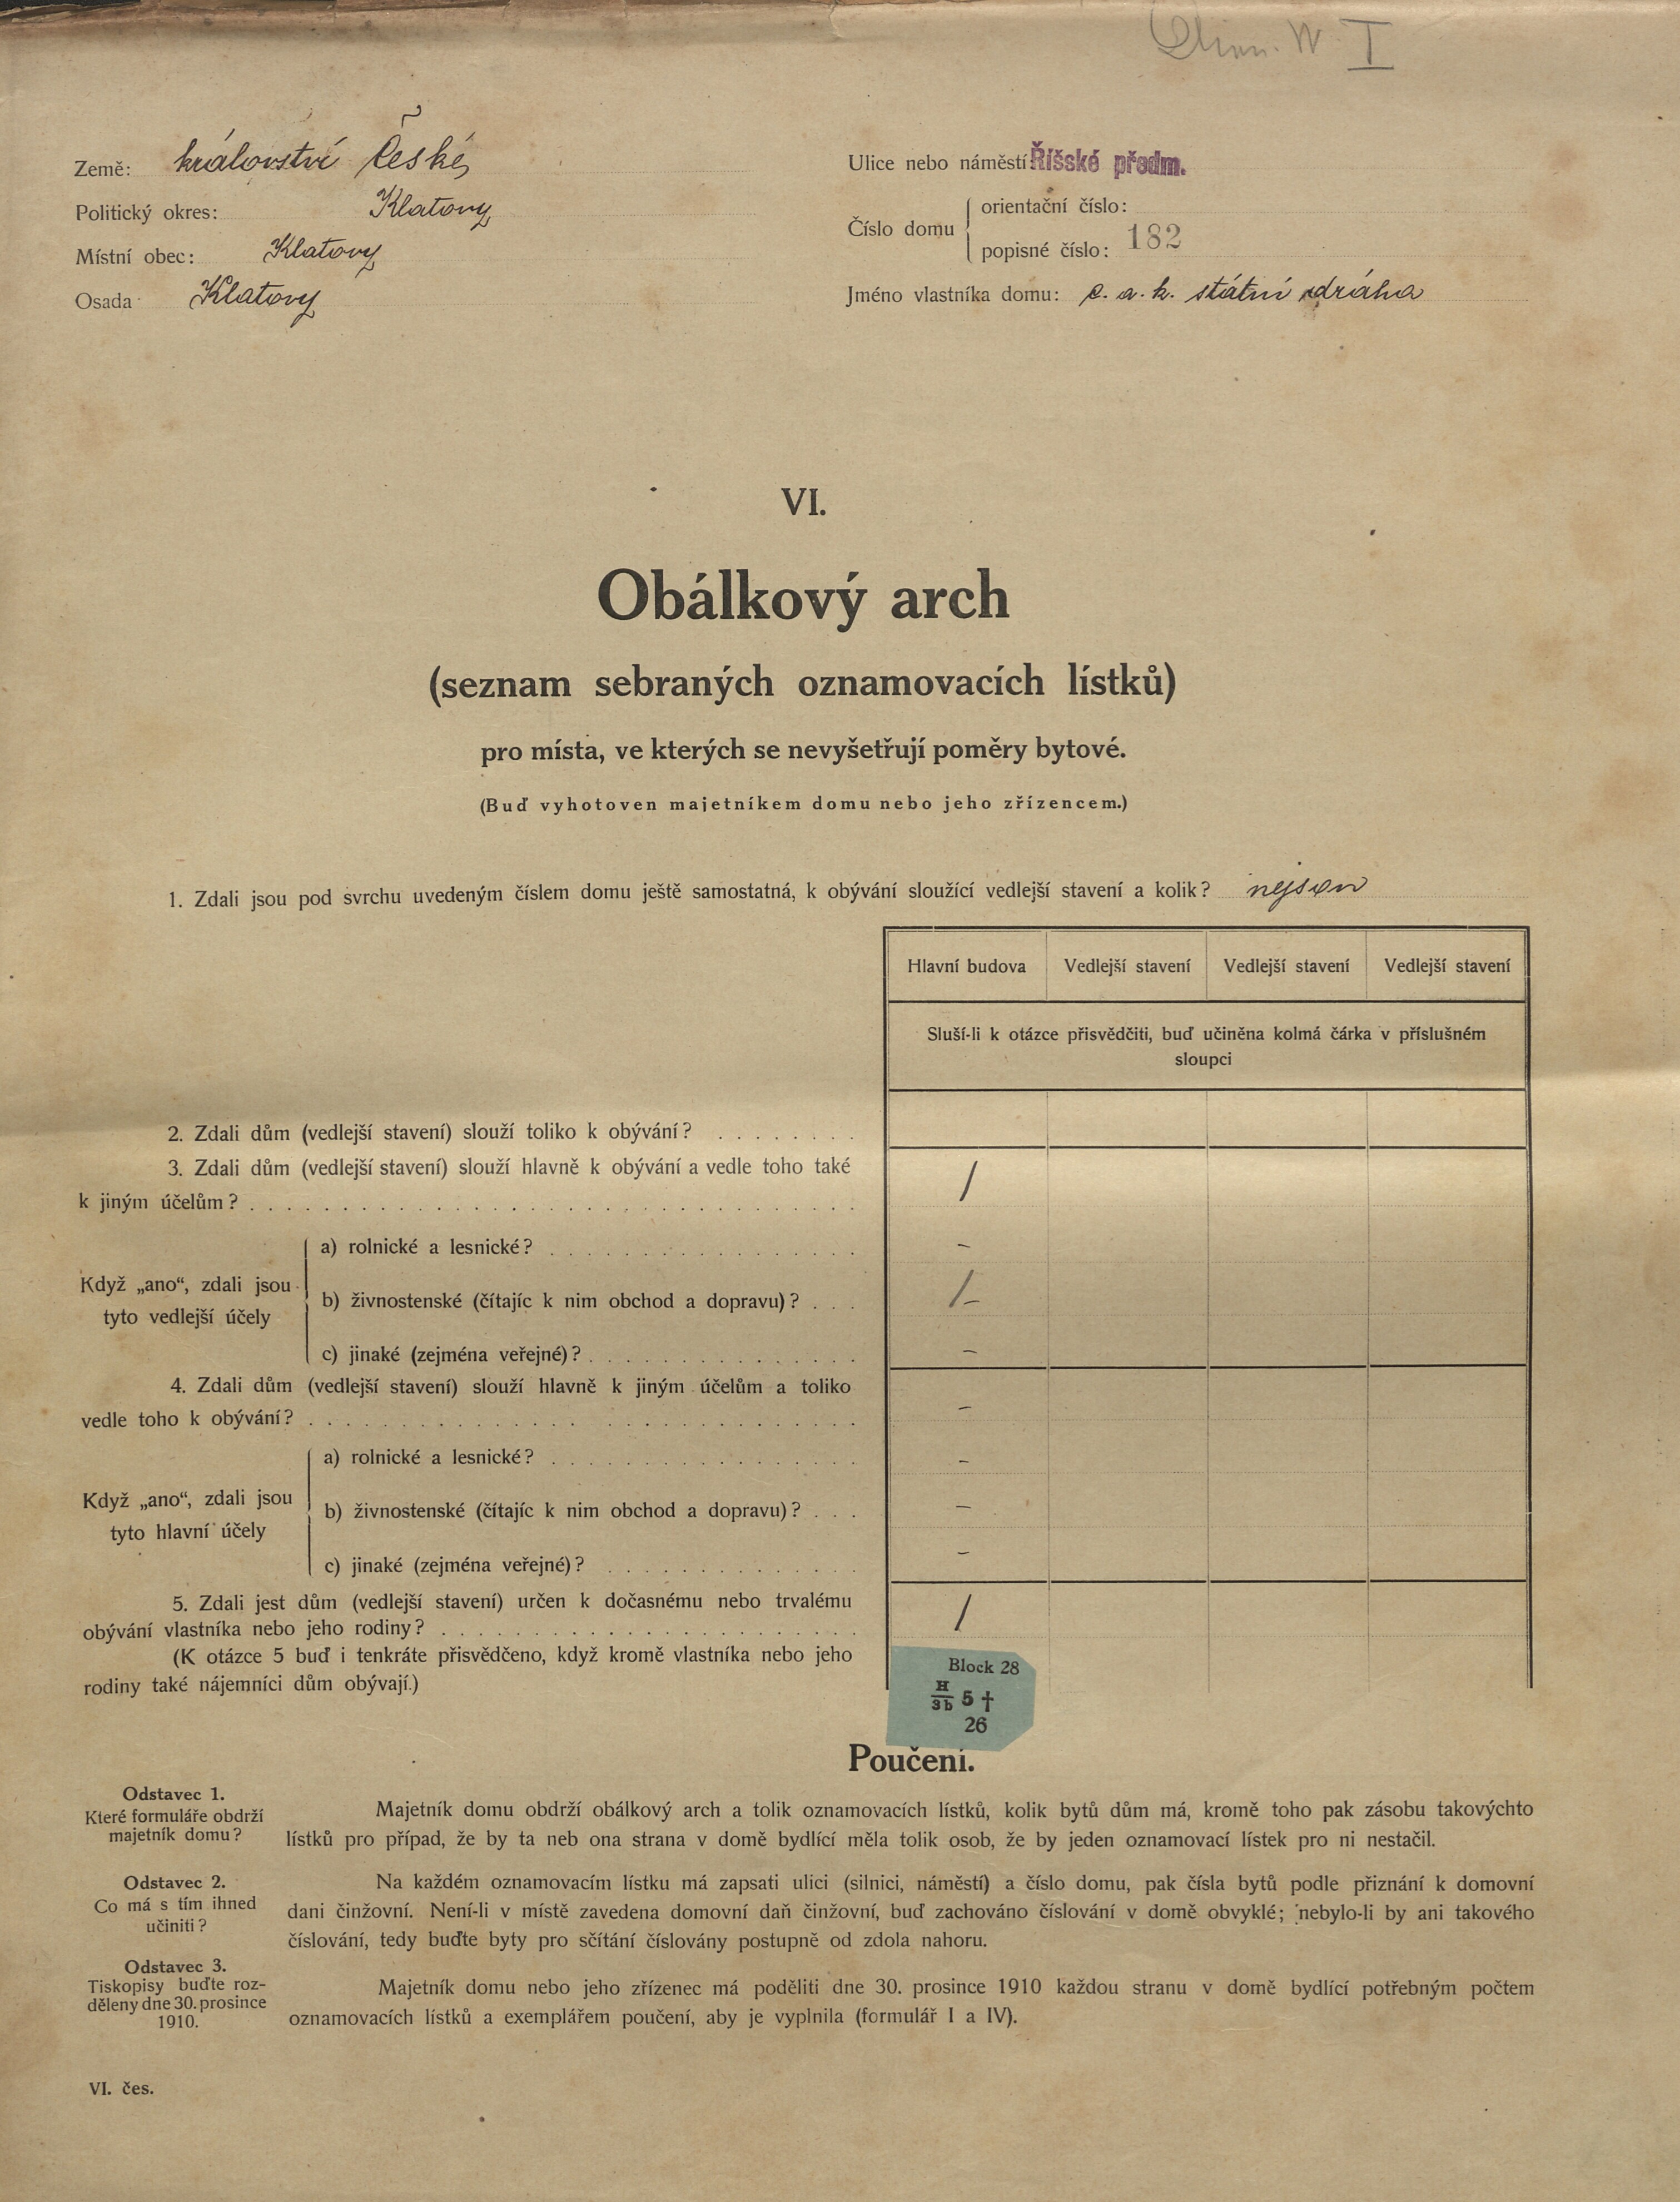 1. soap-kt_01159_census-1910-klatovy-risske-predmesti-cp182_0010